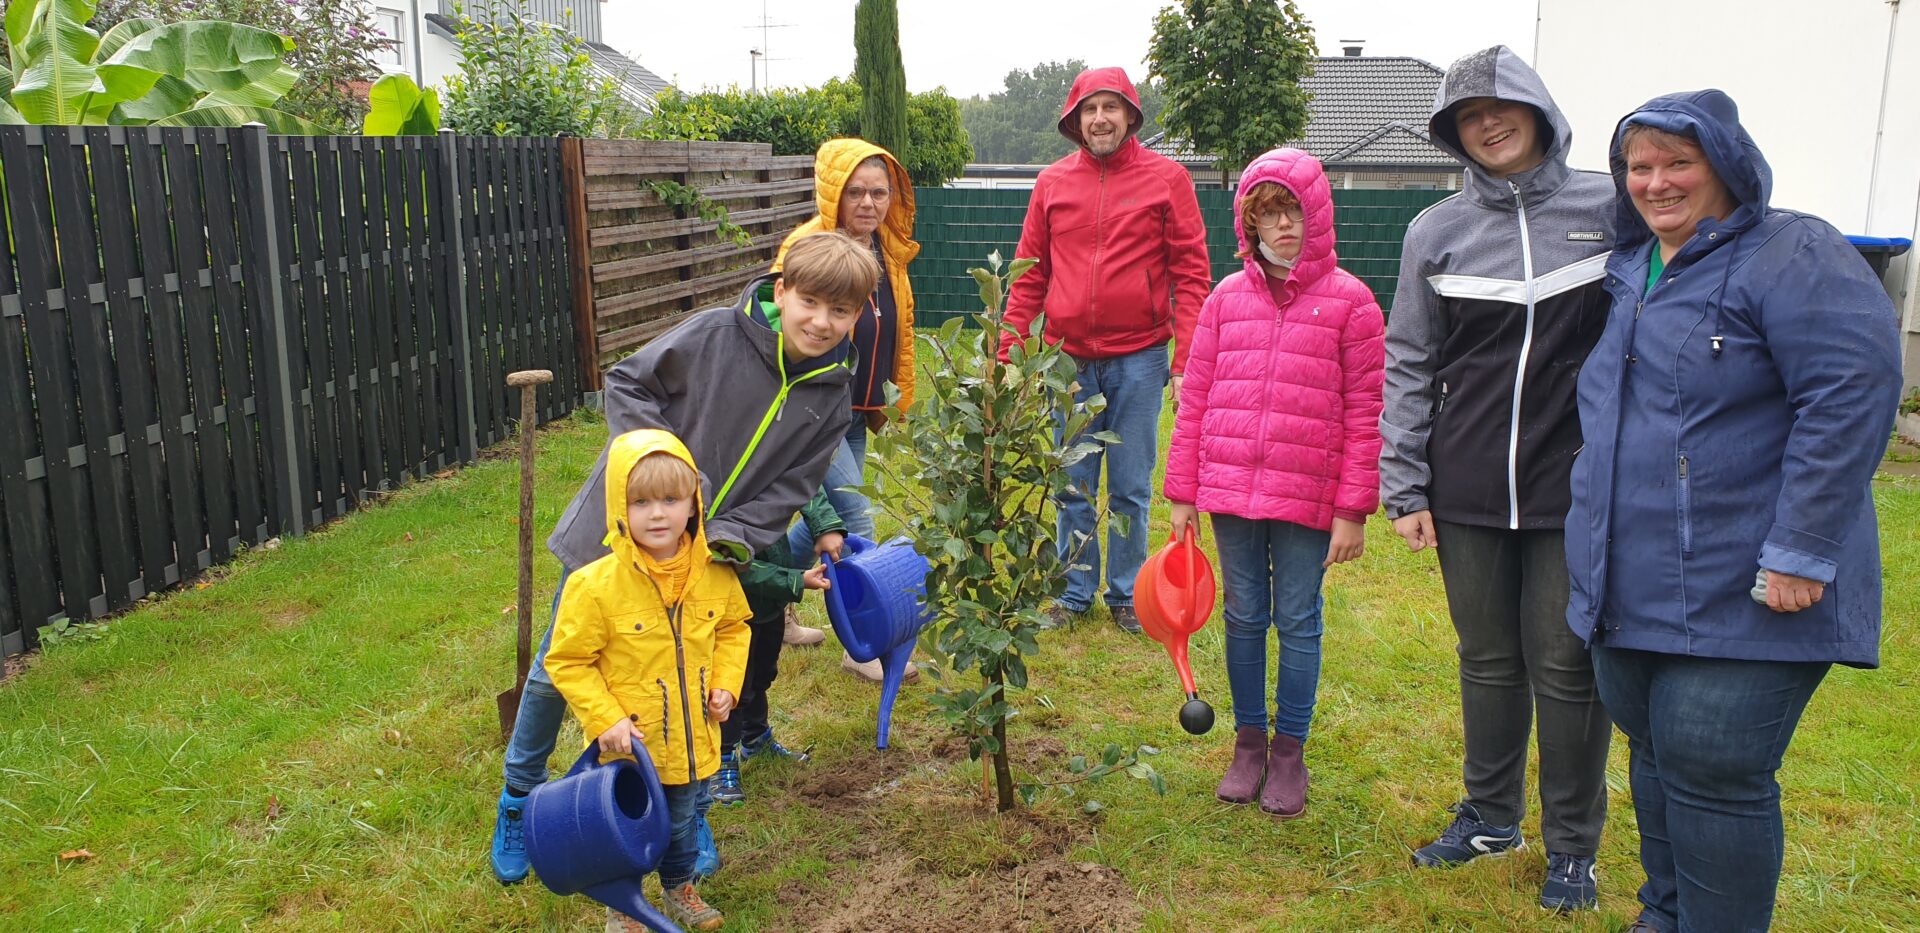 Evangelische Familien pflanzen Apfelbaum